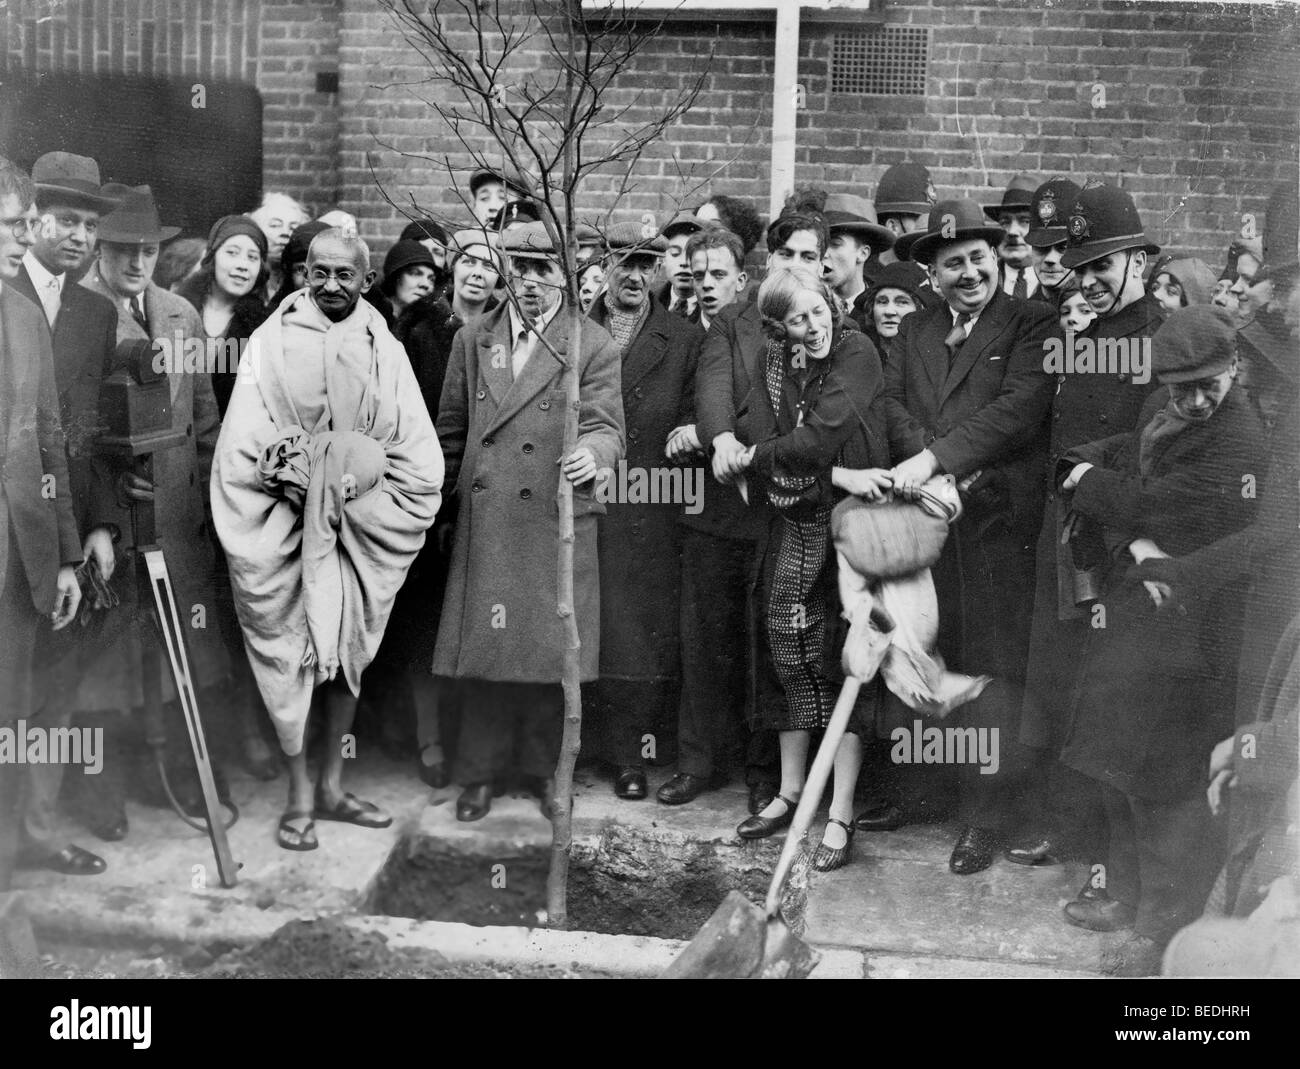 En signe de remerciement, le mahatma Gandhi, deuxième à gauche de l'arbre, planté un arbre devant Kingsley Hall de Londres le 3 décembre 1931. Banque D'Images